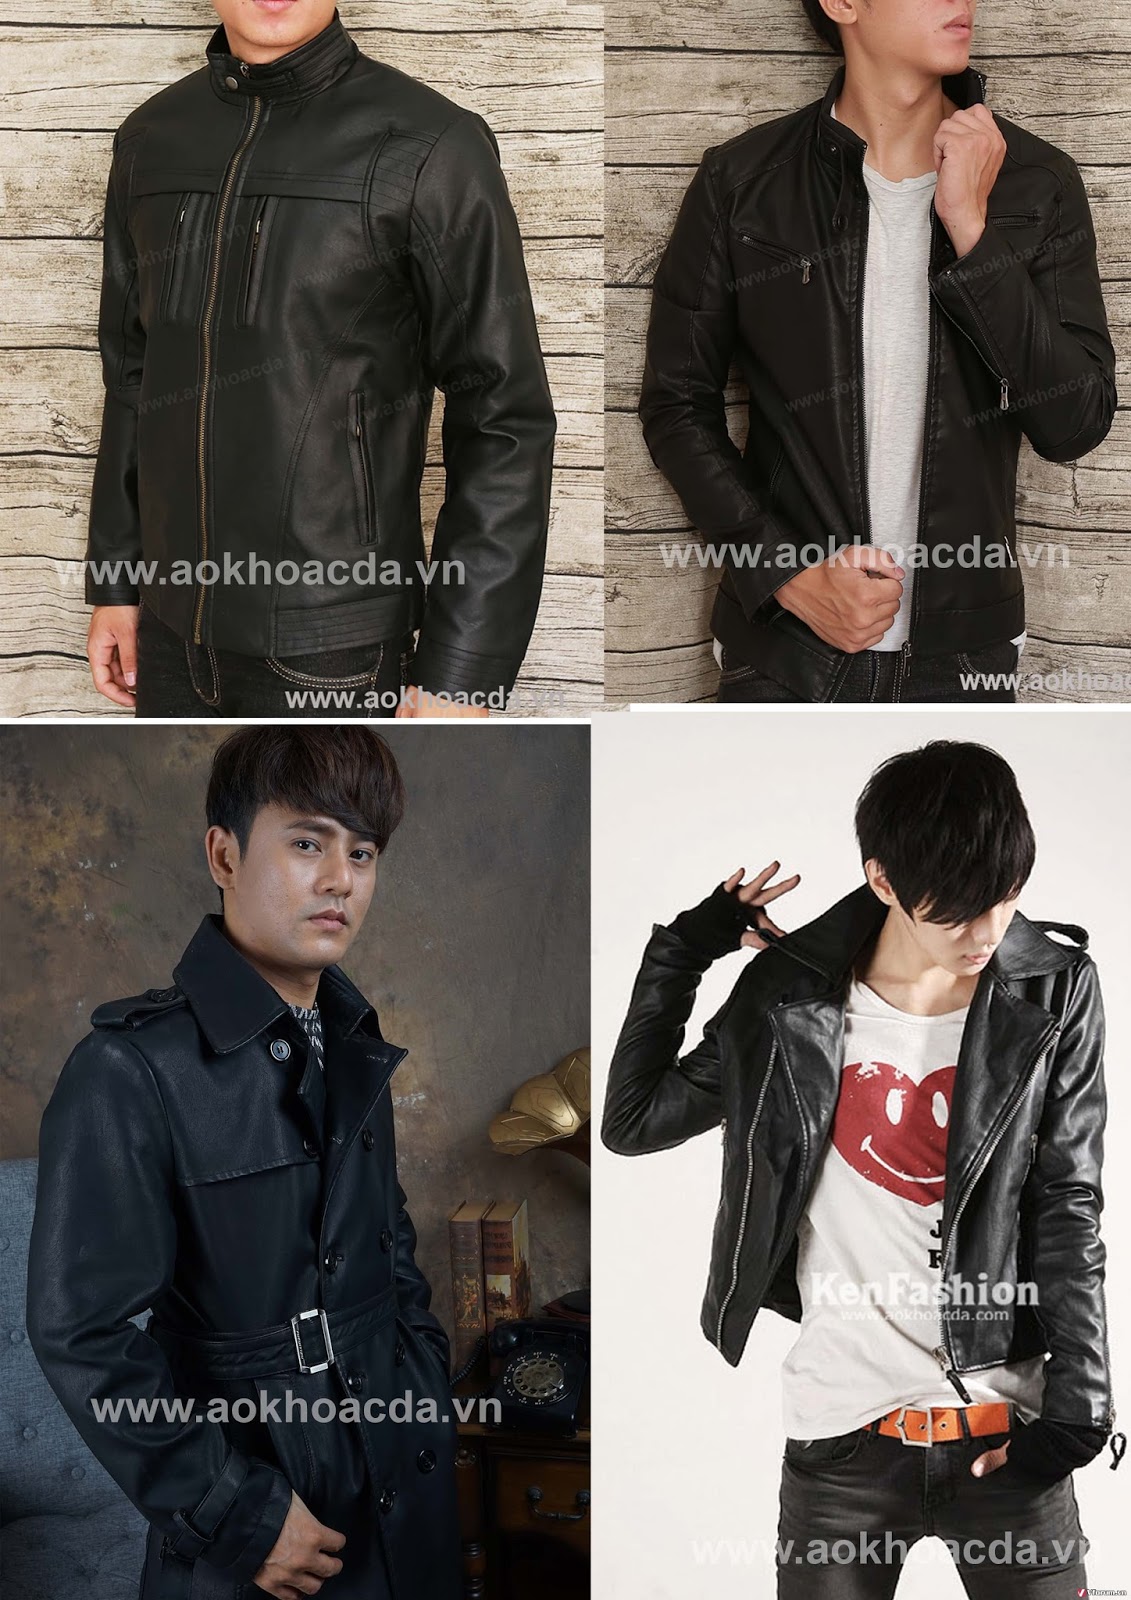 Thời trang nam: Bán áo khoác da và giày da thời trang dành cho nam tại tphcm A3